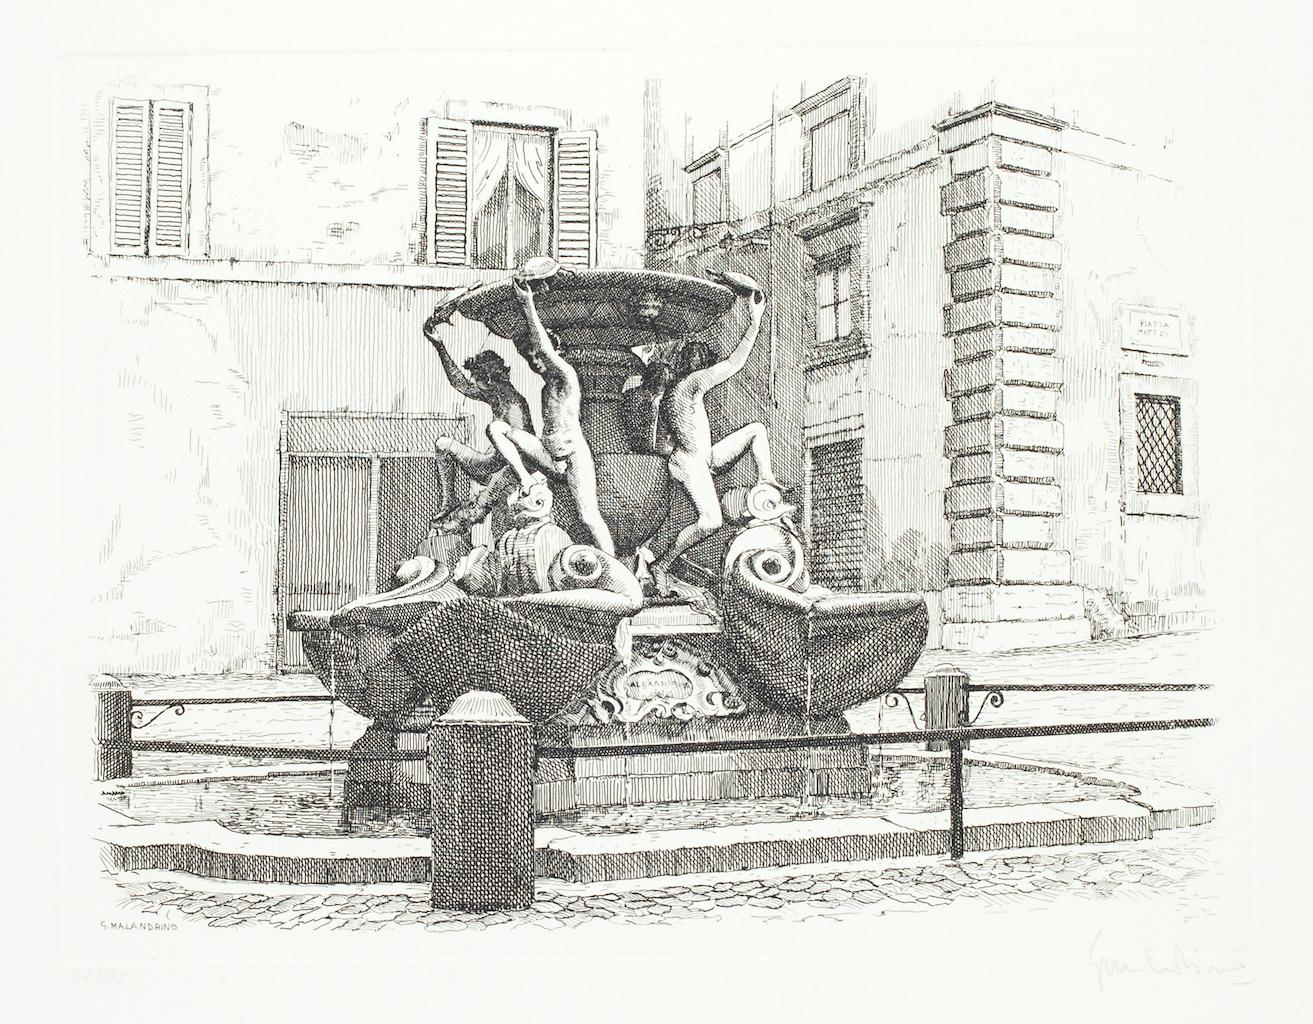 Der Schildkrötenbrunnen ist ein Originalkunstwerk von Giuseppe Malandrino.

Originaldruck in Ätztechnik.

Vom Künstler in der rechten unteren Ecke mit Bleistift handsigniert. In der linken unteren Ecke nummeriert. Ausgabe 91/199.

Gute Bedingungen.